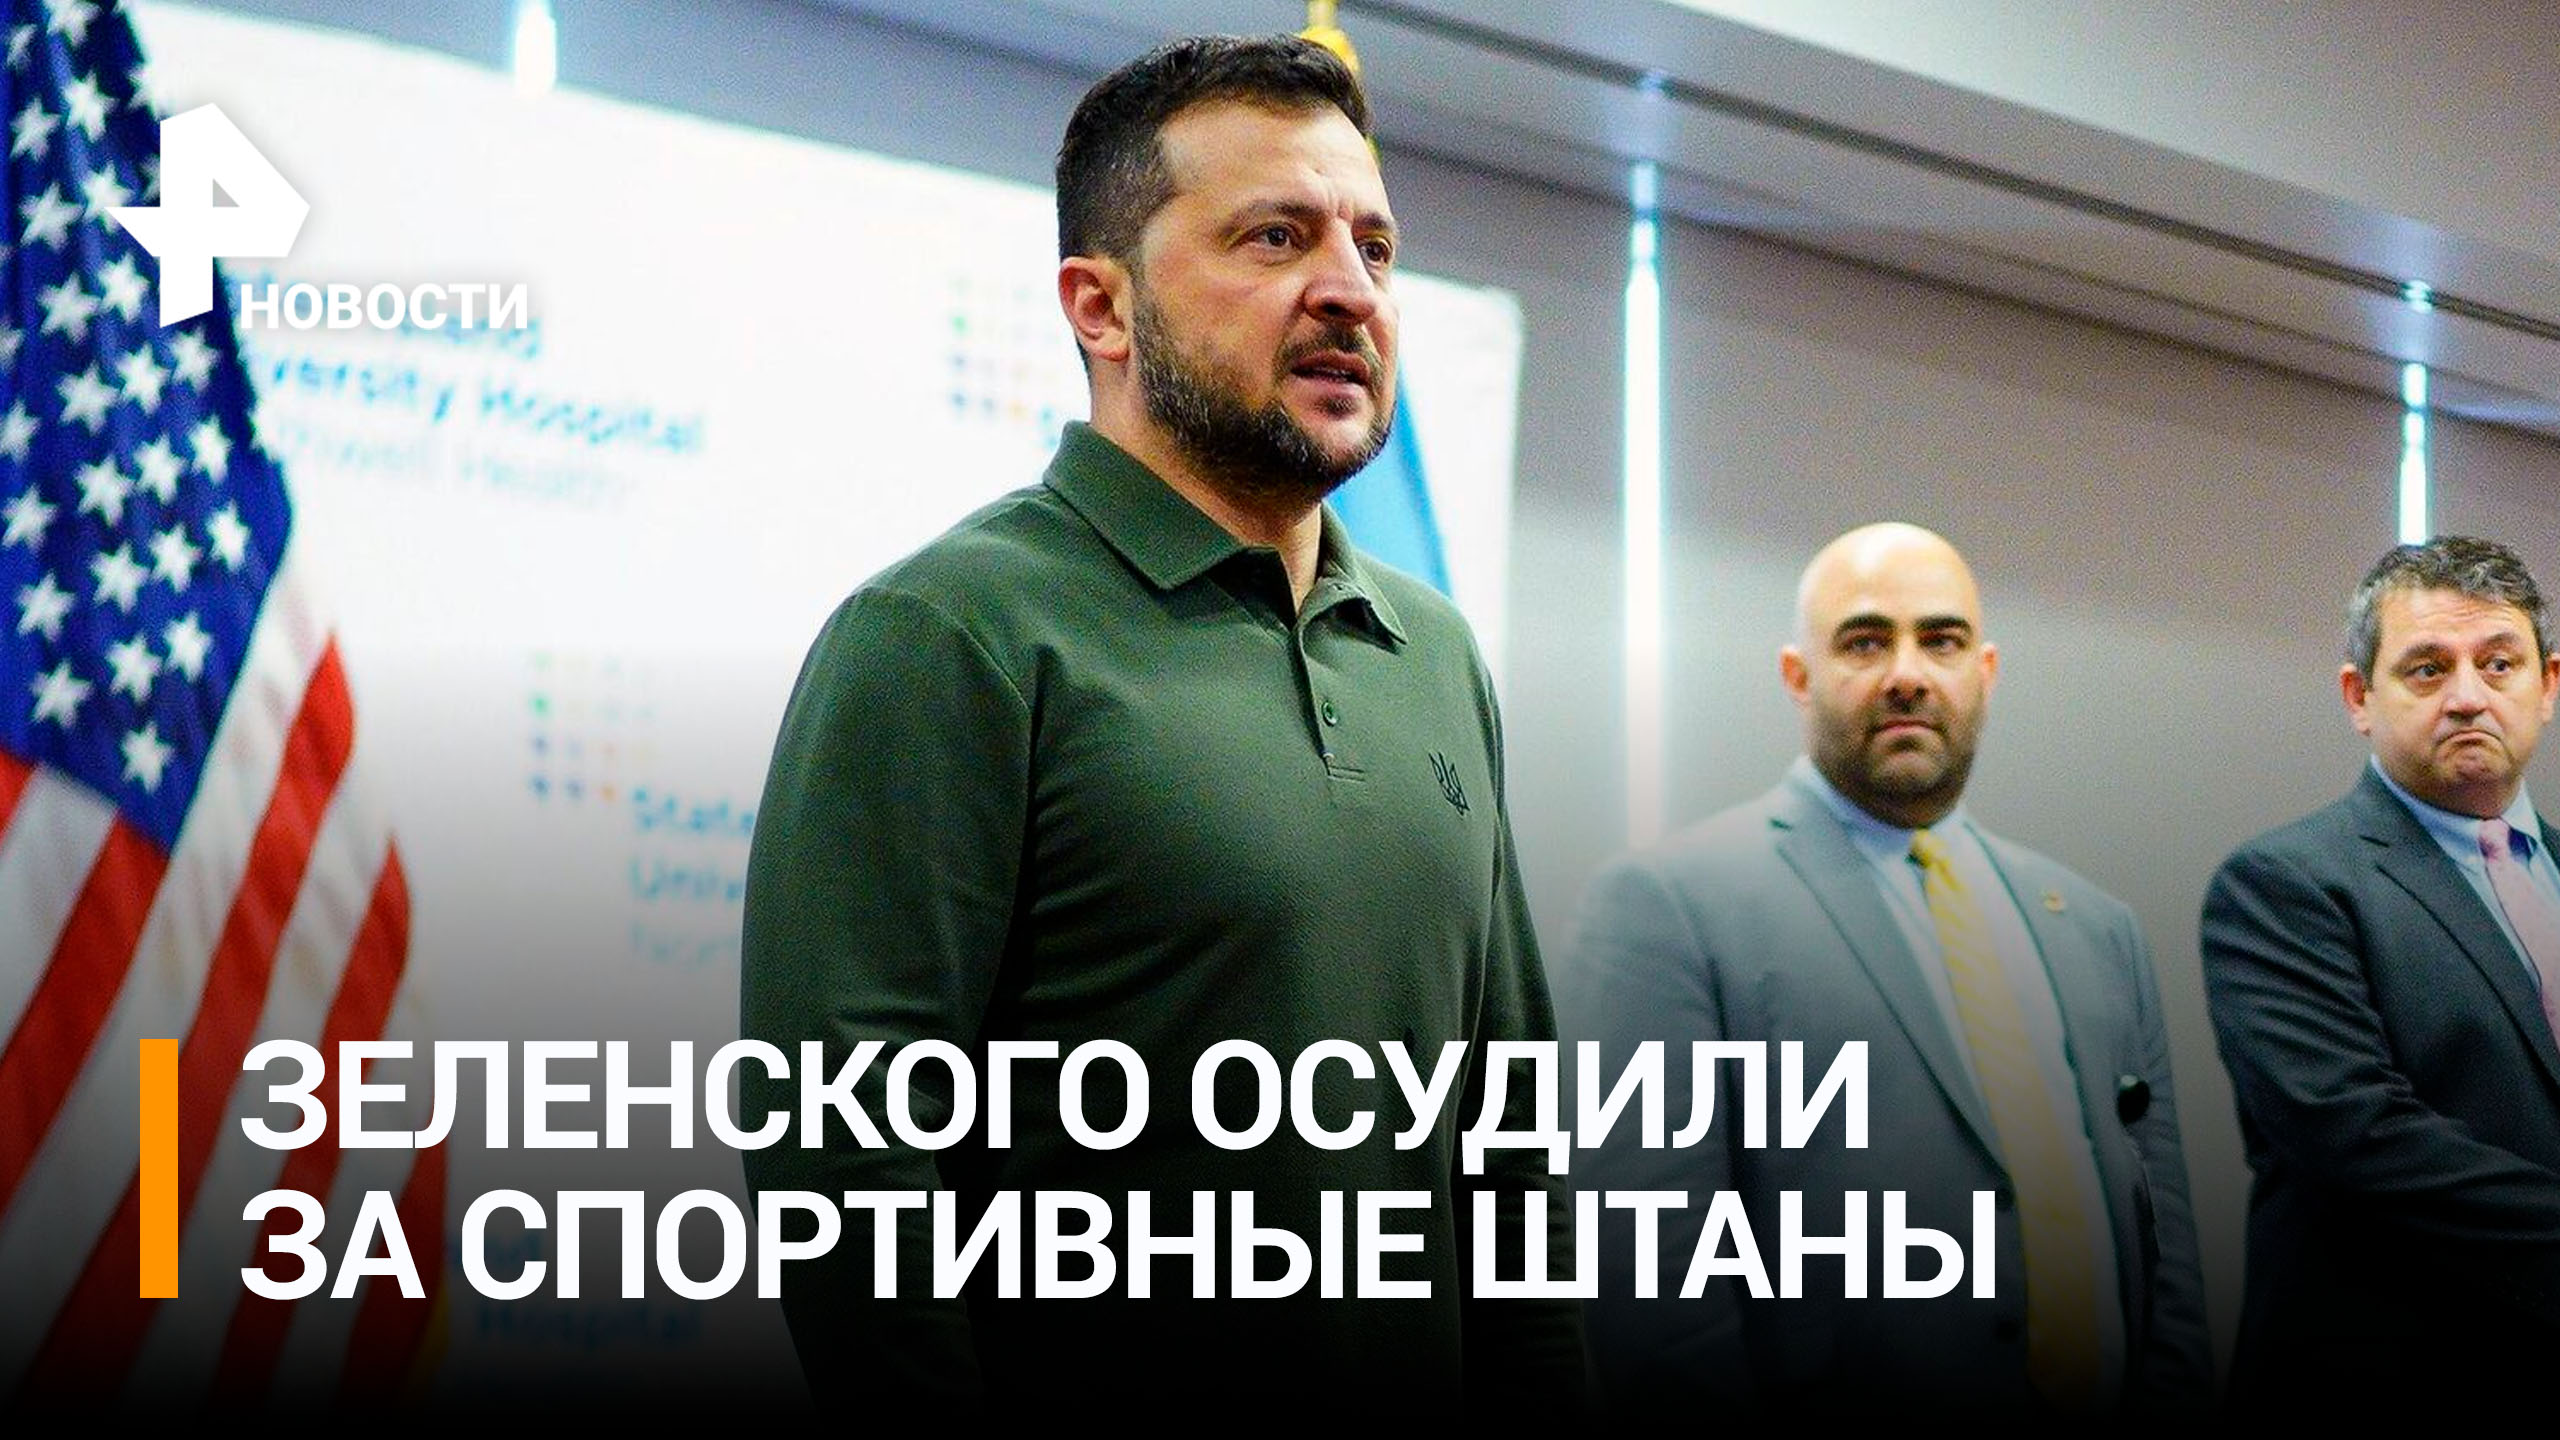 В США призвали Зеленского "просить финансирование" в костюме / РЕН Новости